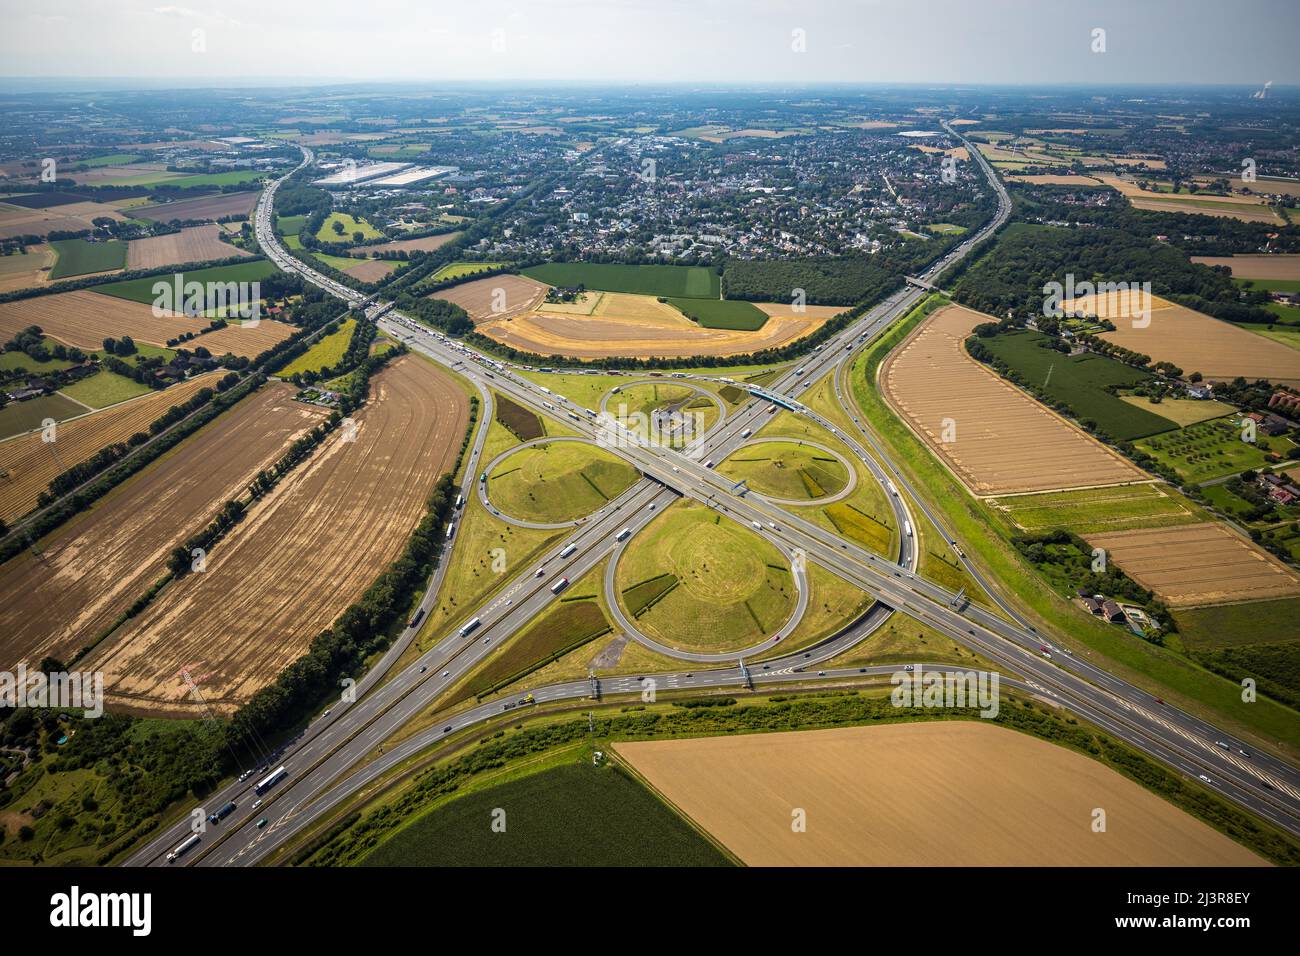 Vue aérienne, Kamener Kreuz avec les autoroutes A1 et A2, sculpture en hélicoptère Yellow Angel dans le cercle intérieur, Kamen, région de Ruhr, Rhénanie-du-Nord-Westphalie Banque D'Images